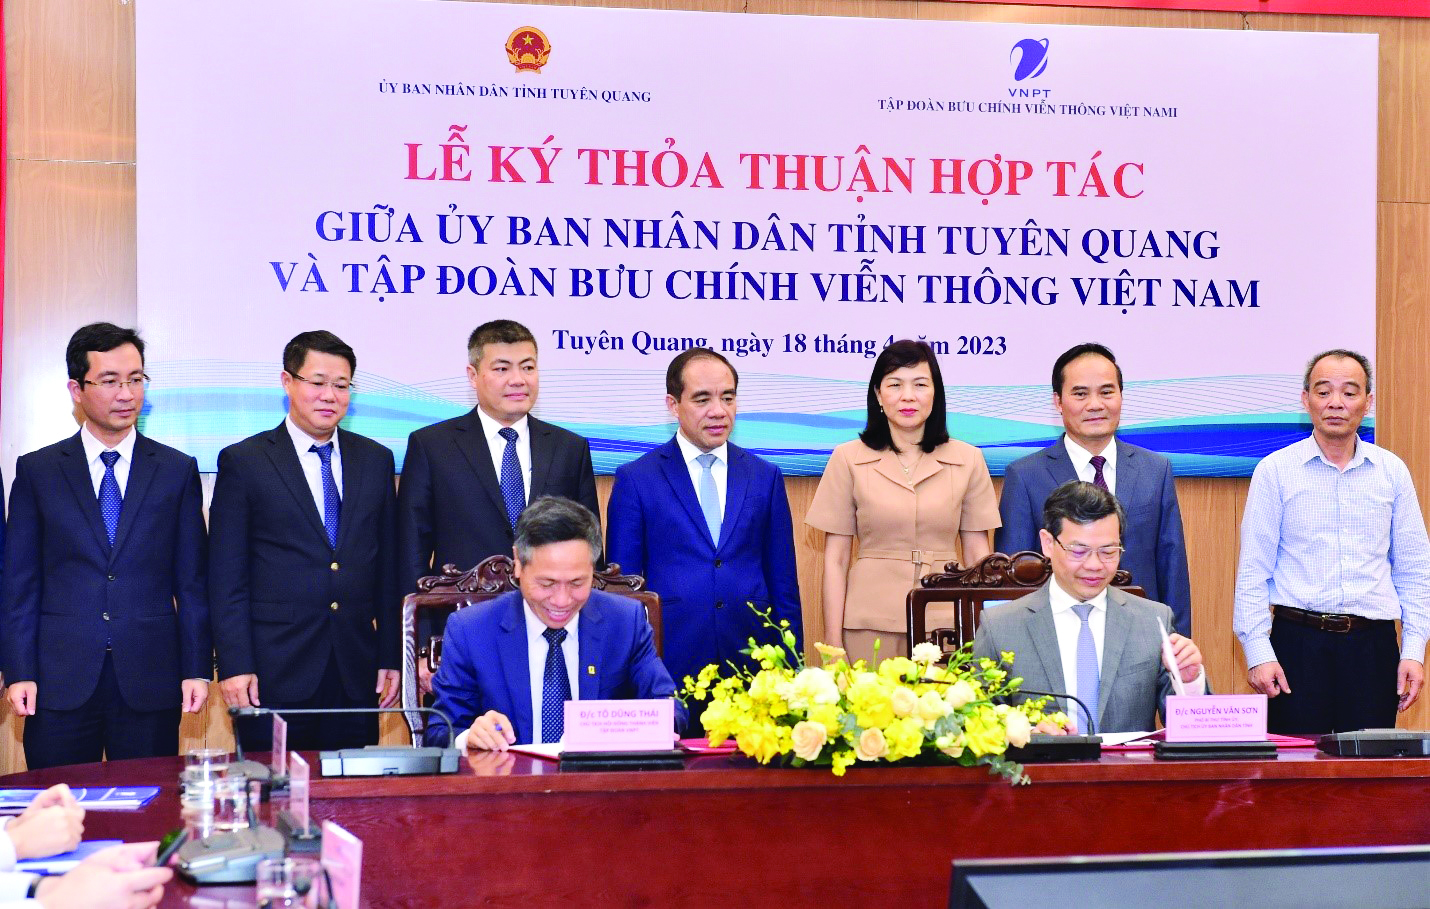  Ký kết thỏa thuận hợp tác chuyển đổi số trên địa bàn tỉnh Tuyên Quang giai đoạn 2023 - 2028 giữa Ủy ban nhân dân tỉnh và Tập đoàn Bưu chính Viễn thông Việt Nam.